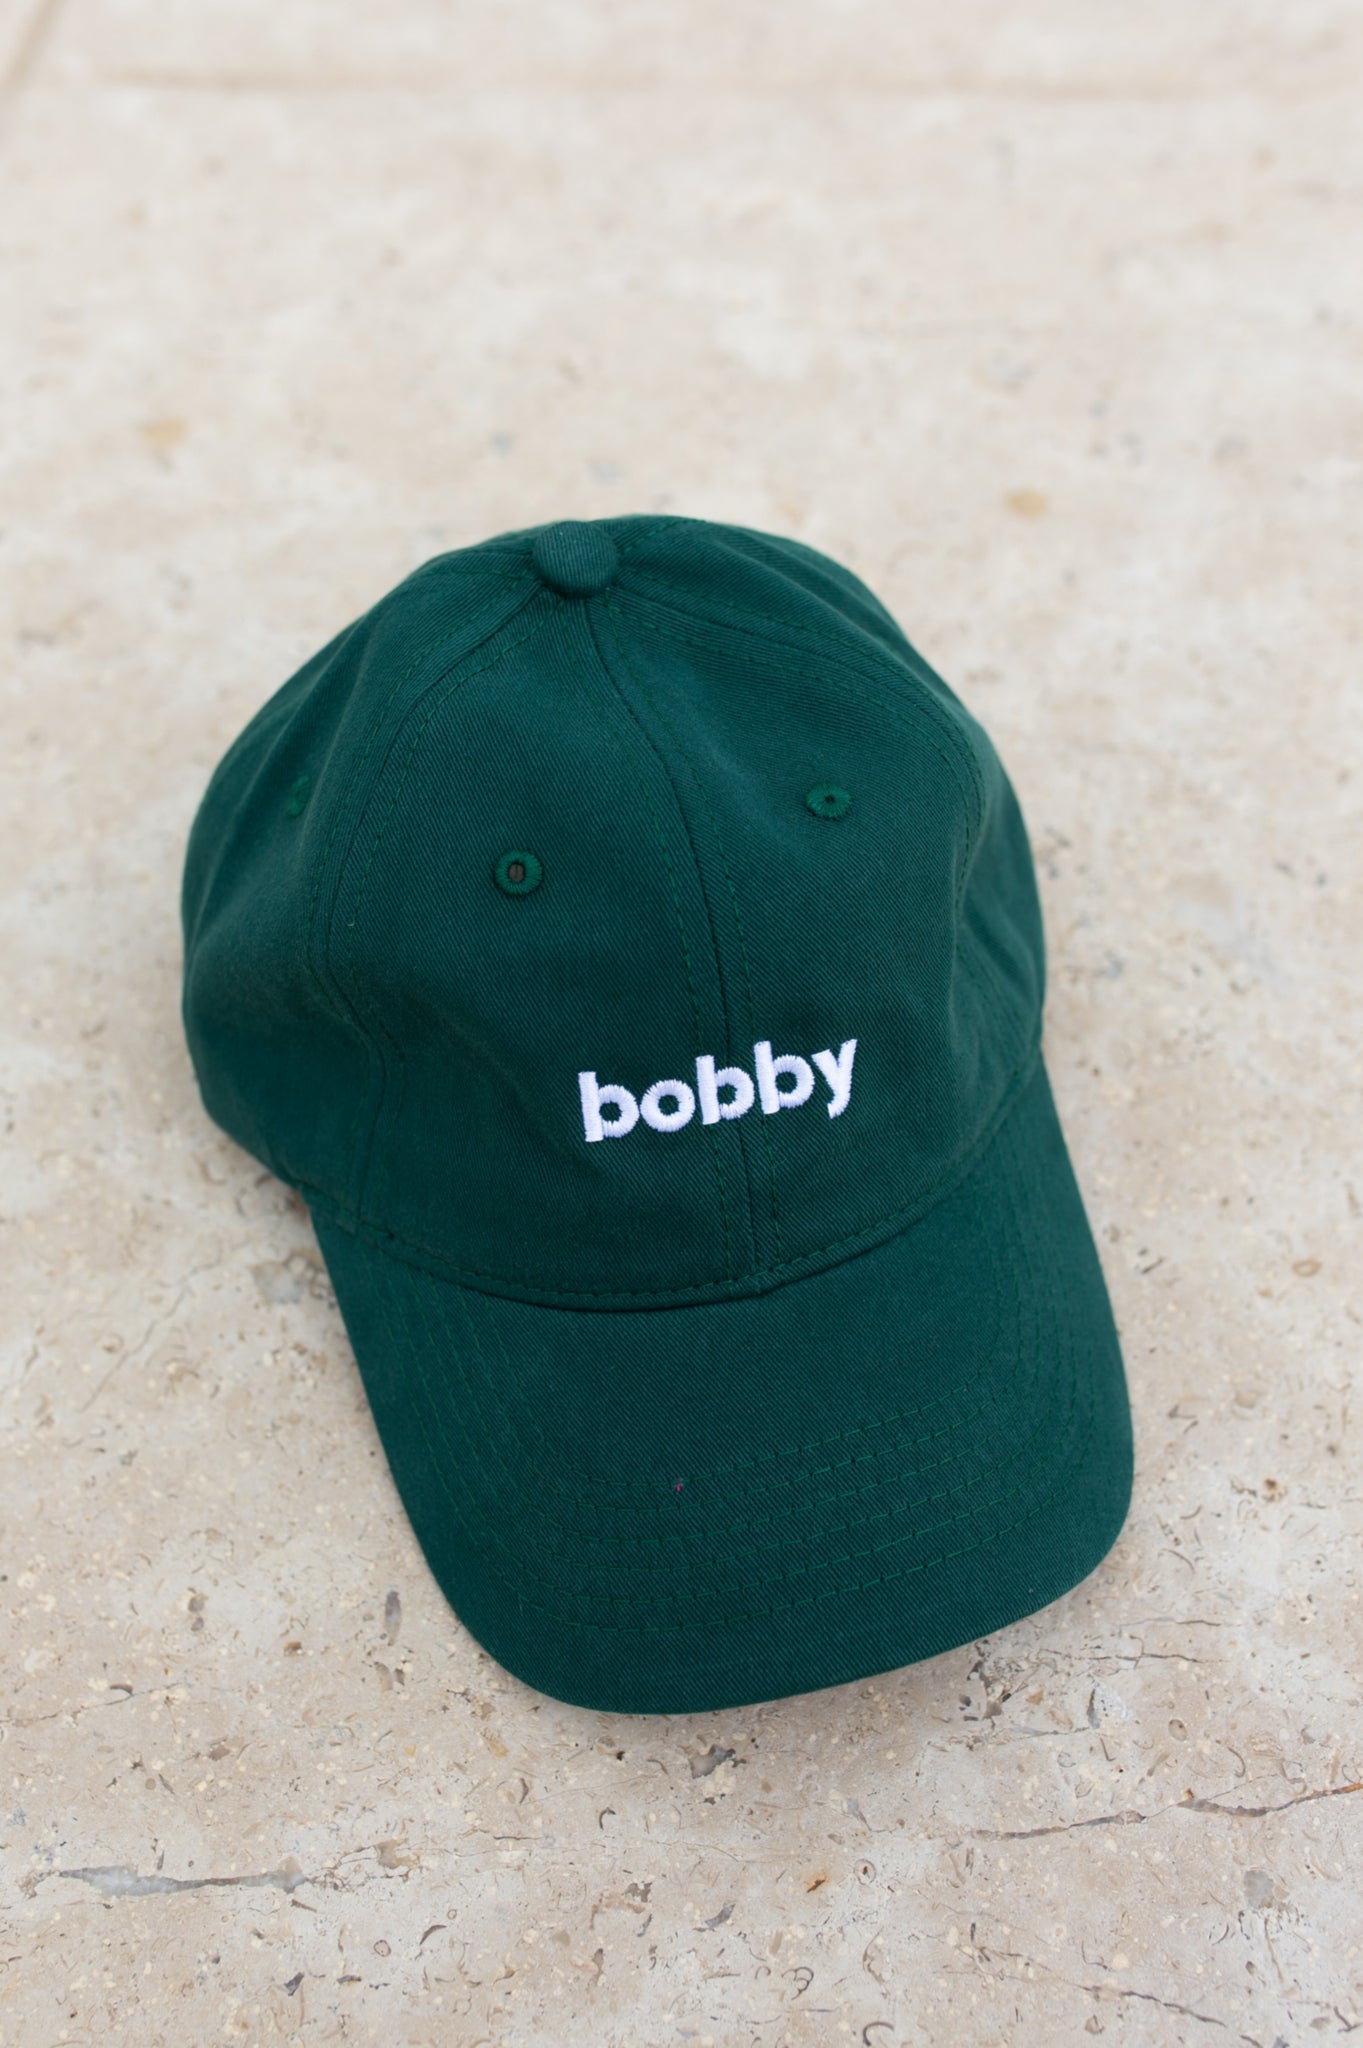 BOBBY CAPS